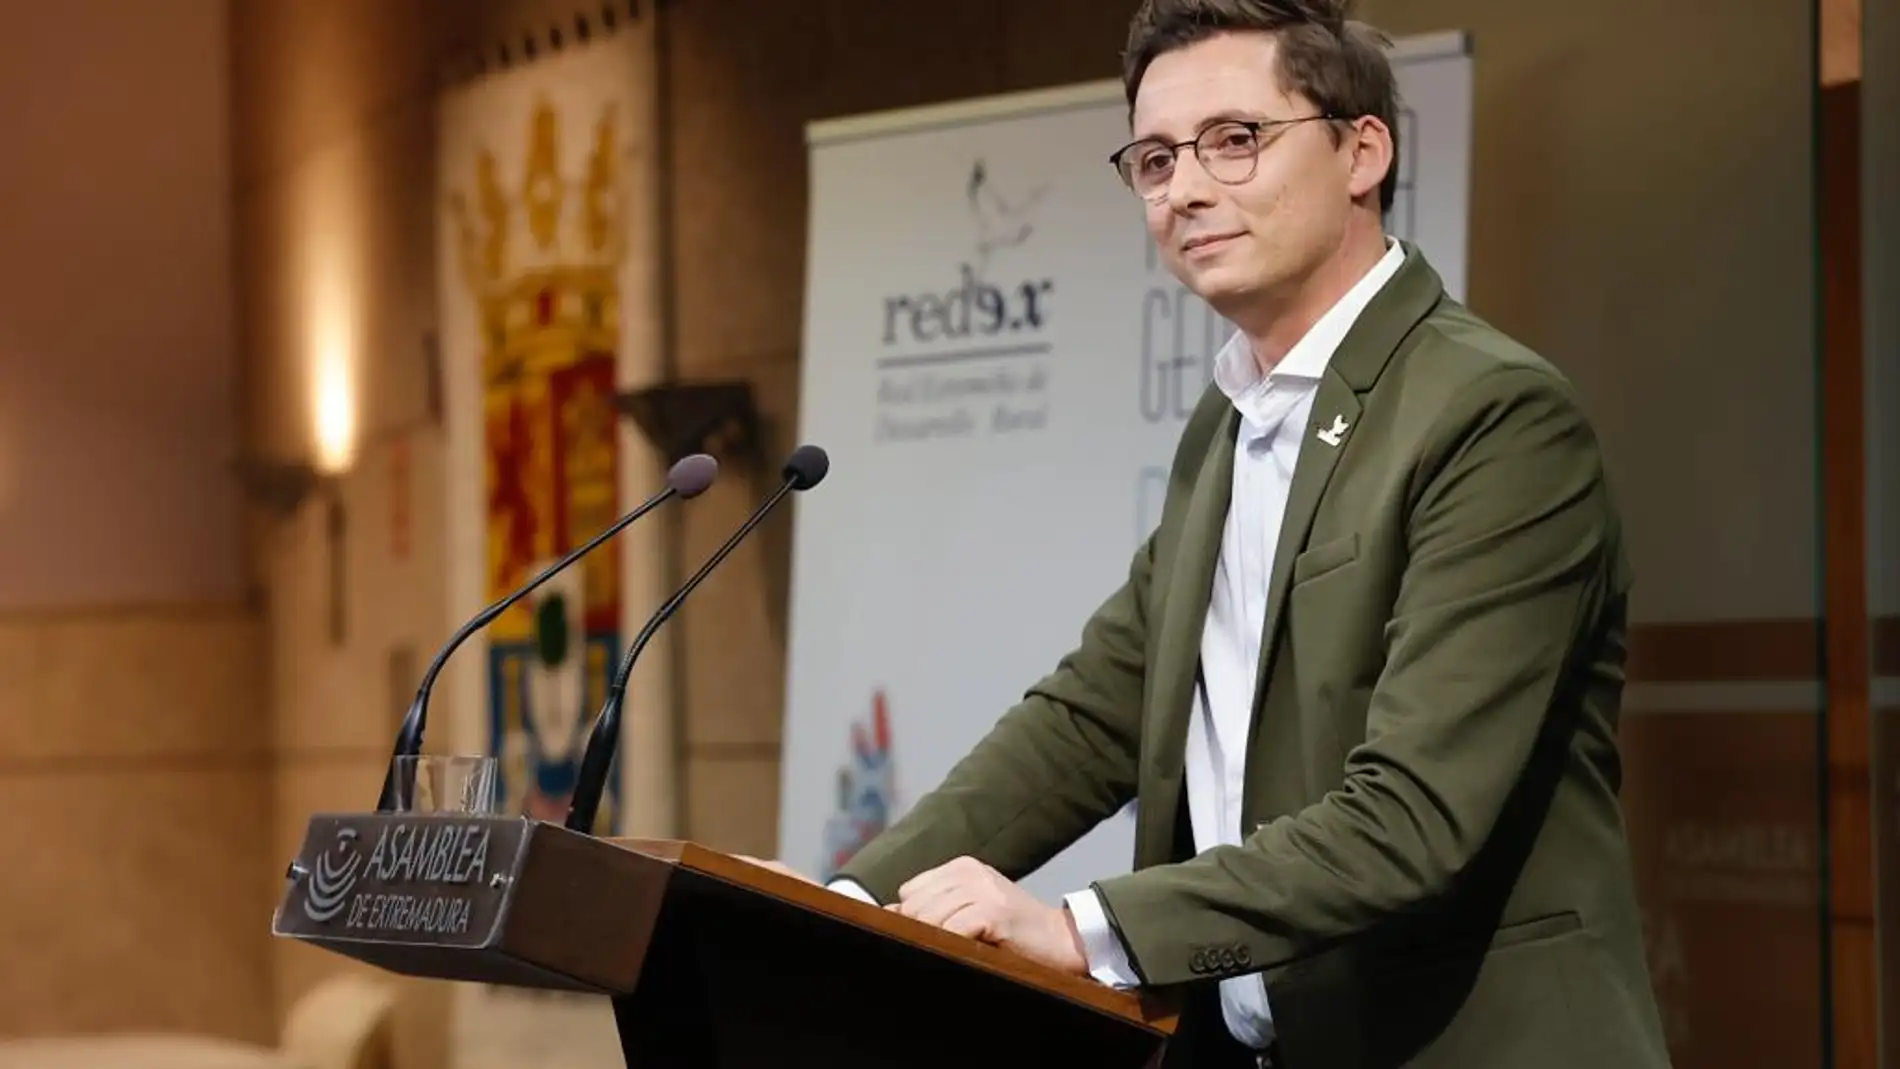 REDEX elige a Francisco Javier Sánchez Vega como nuevo presidente en su Asamblea regional